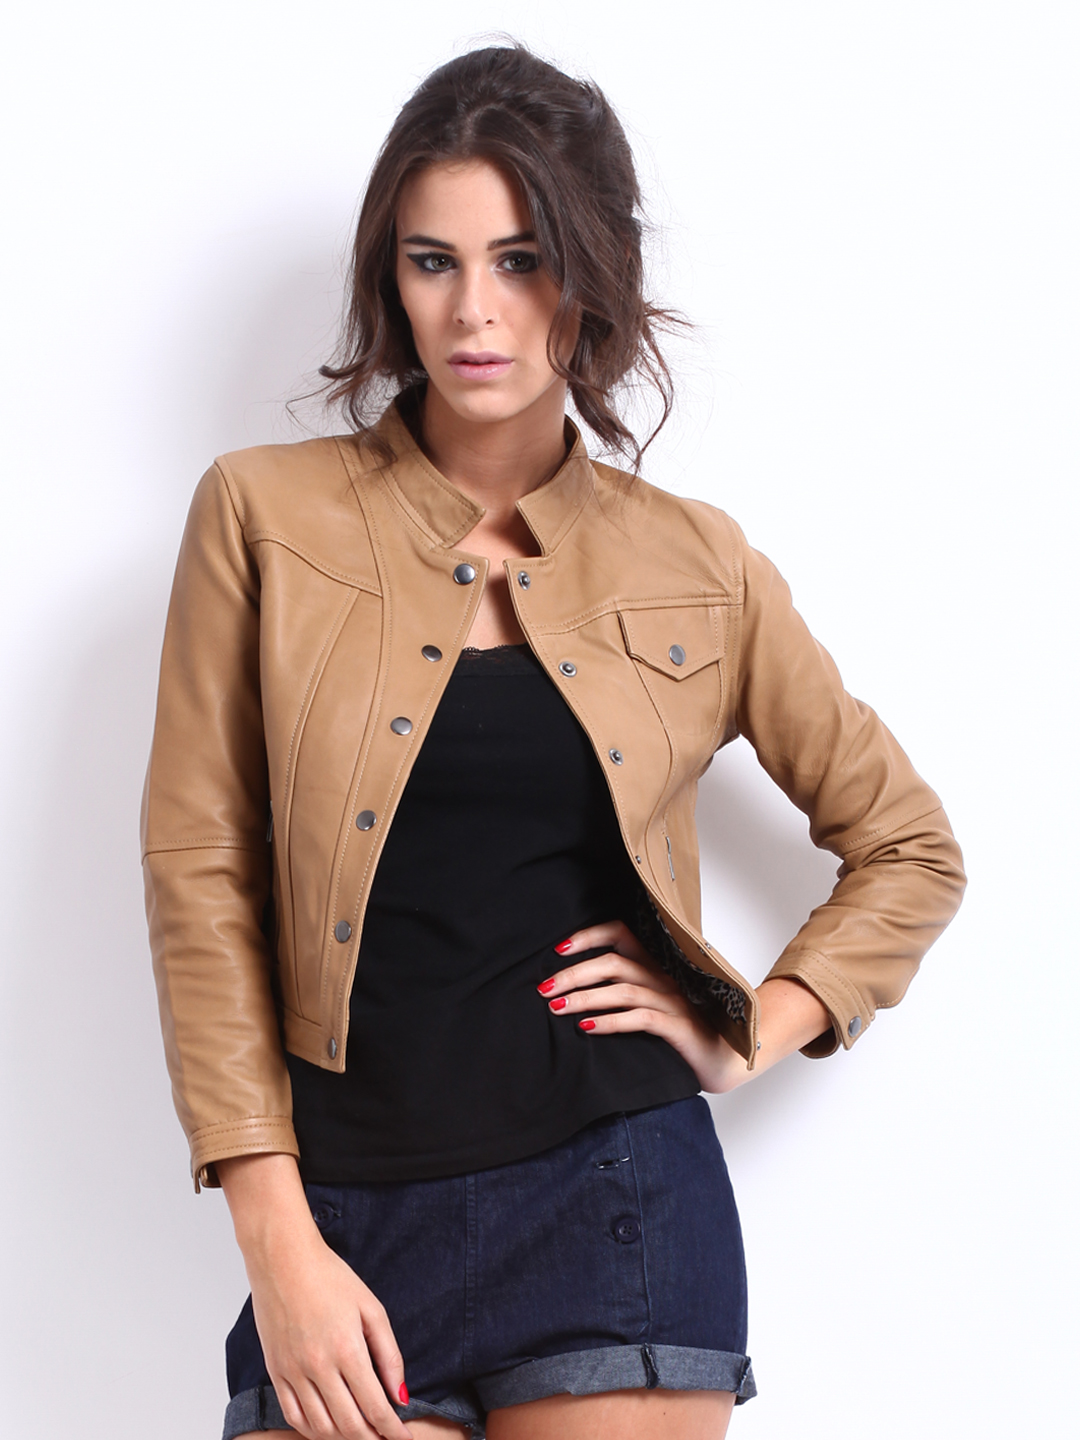 Buy The Vanca Women Brown Leather Jacket 1445373 for women online